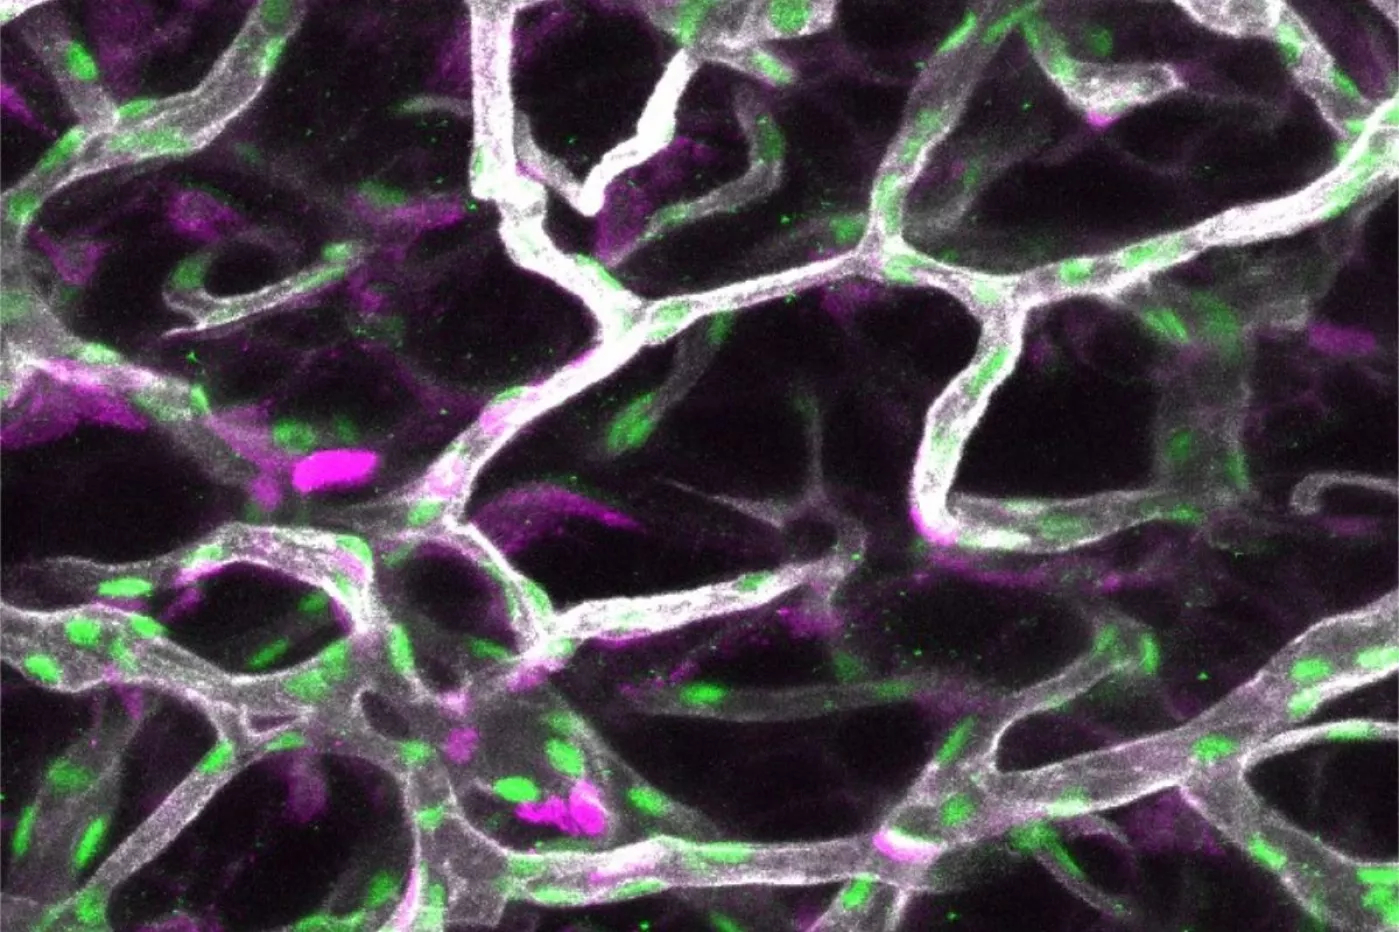  Inmunoflorescencia de tejido adiposo blanco donde se han teñido los vasos sanguíneos en blanco, los núcleos de las células endoteliales en verde y las células que están proliferando en magenta. FOTO: CicBiogune. 